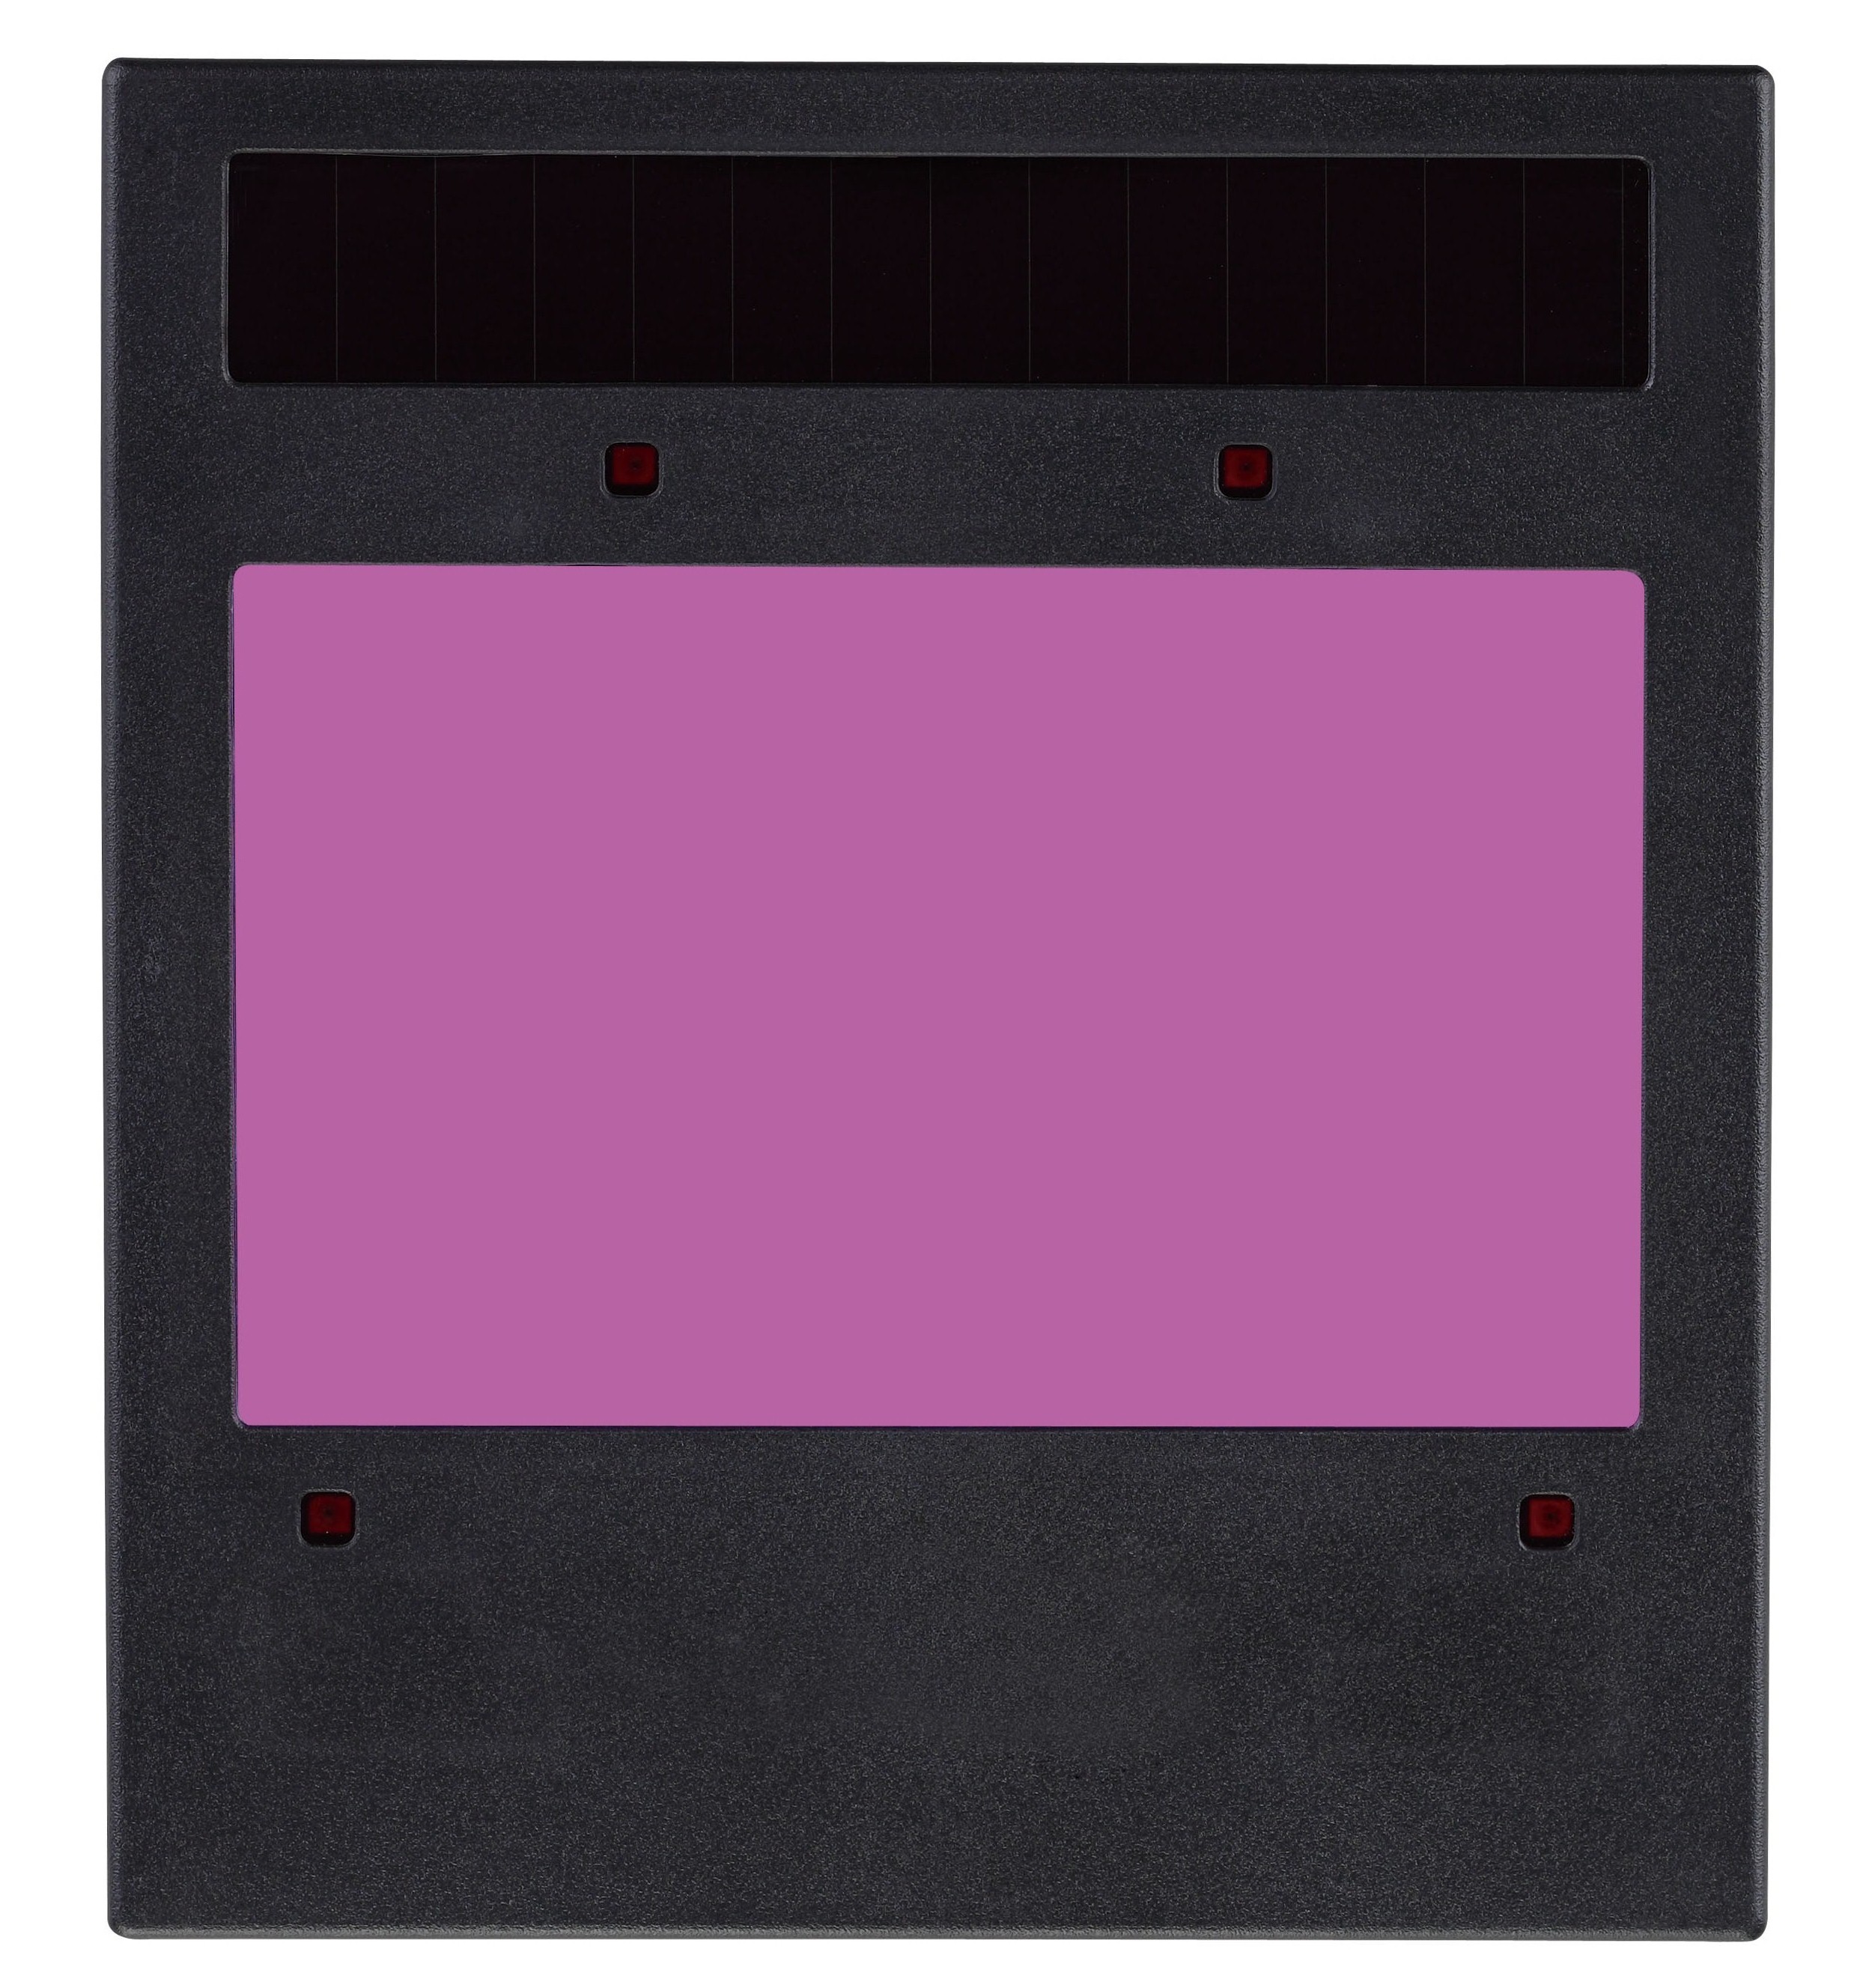 Chargeur automatique de documents DX-980N 2